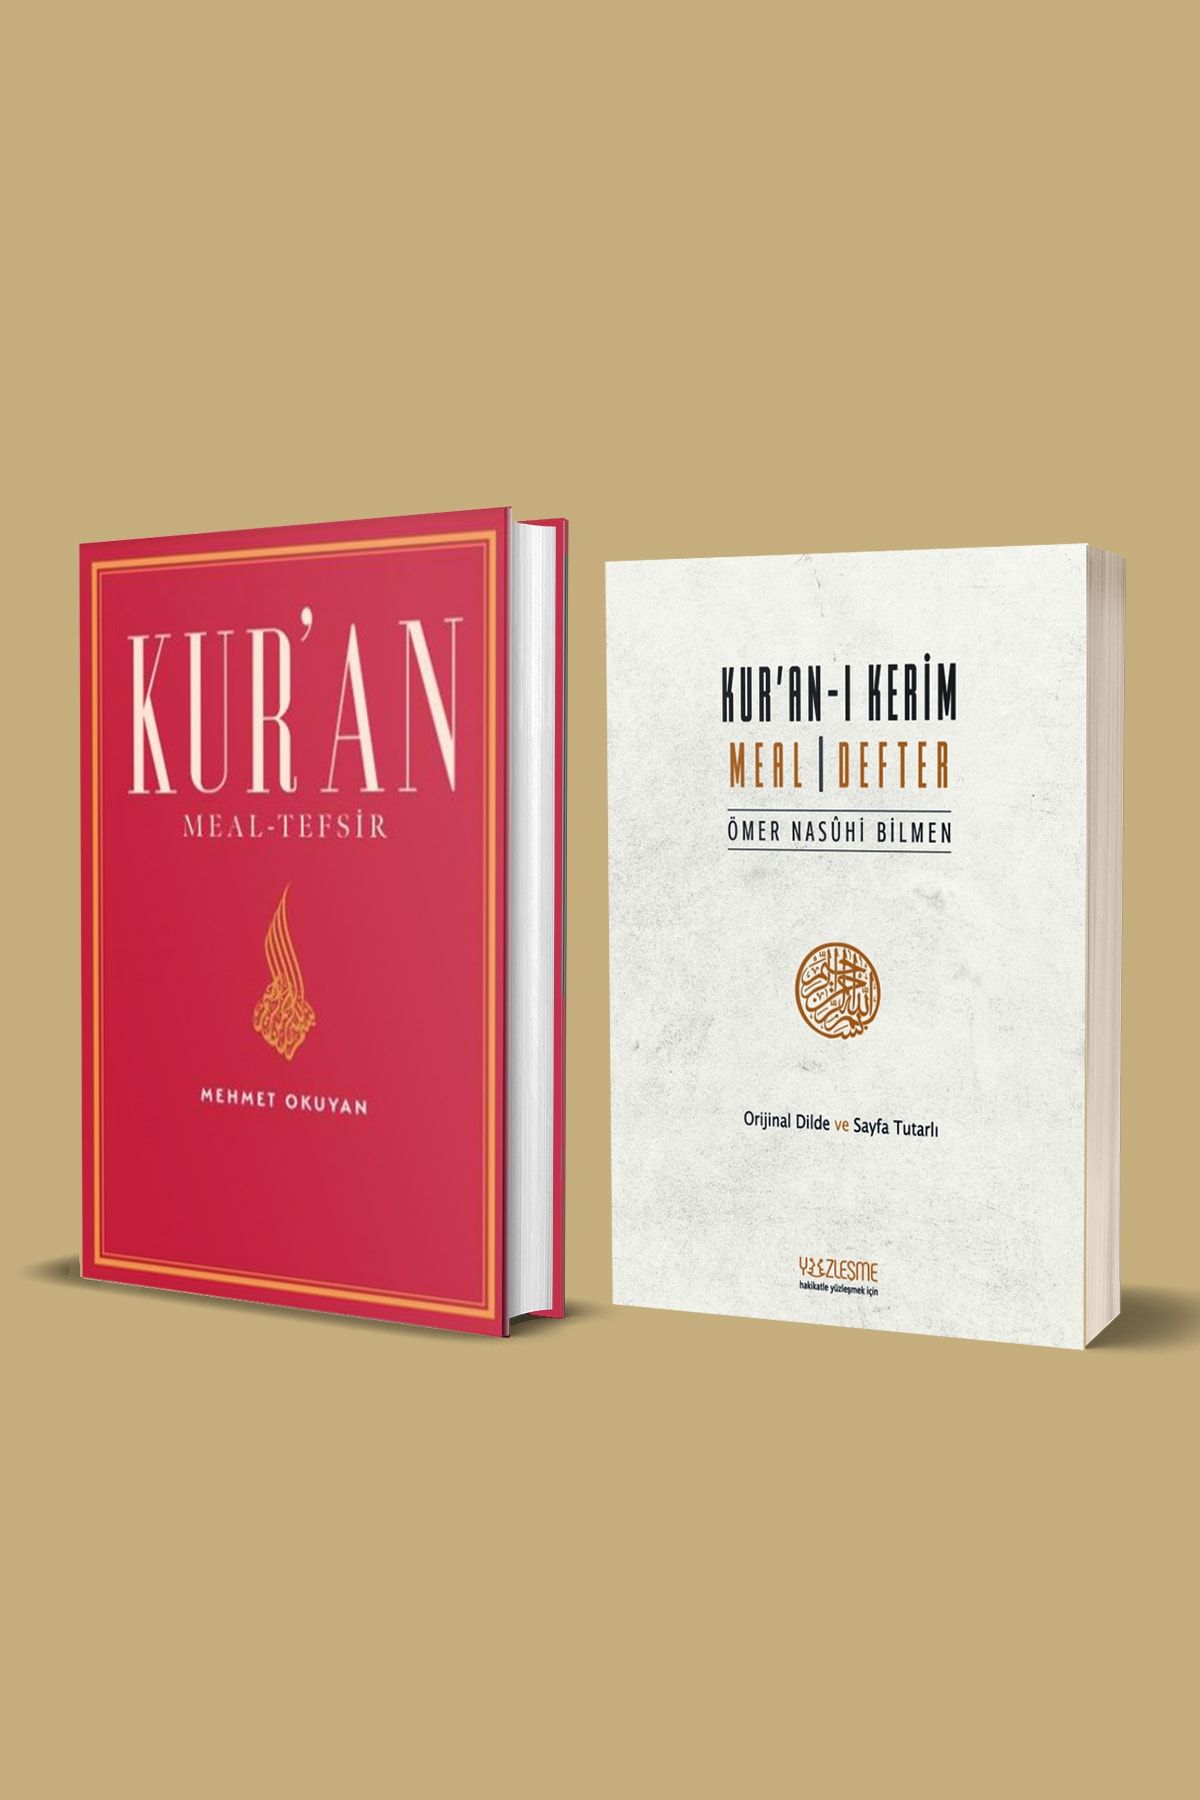 Yüzleşme Yayınları Kur'an Meali (MEHMET OKUYAN) & Kur'an Meal Defter (ÖMER NASUHİ BİLMEN)